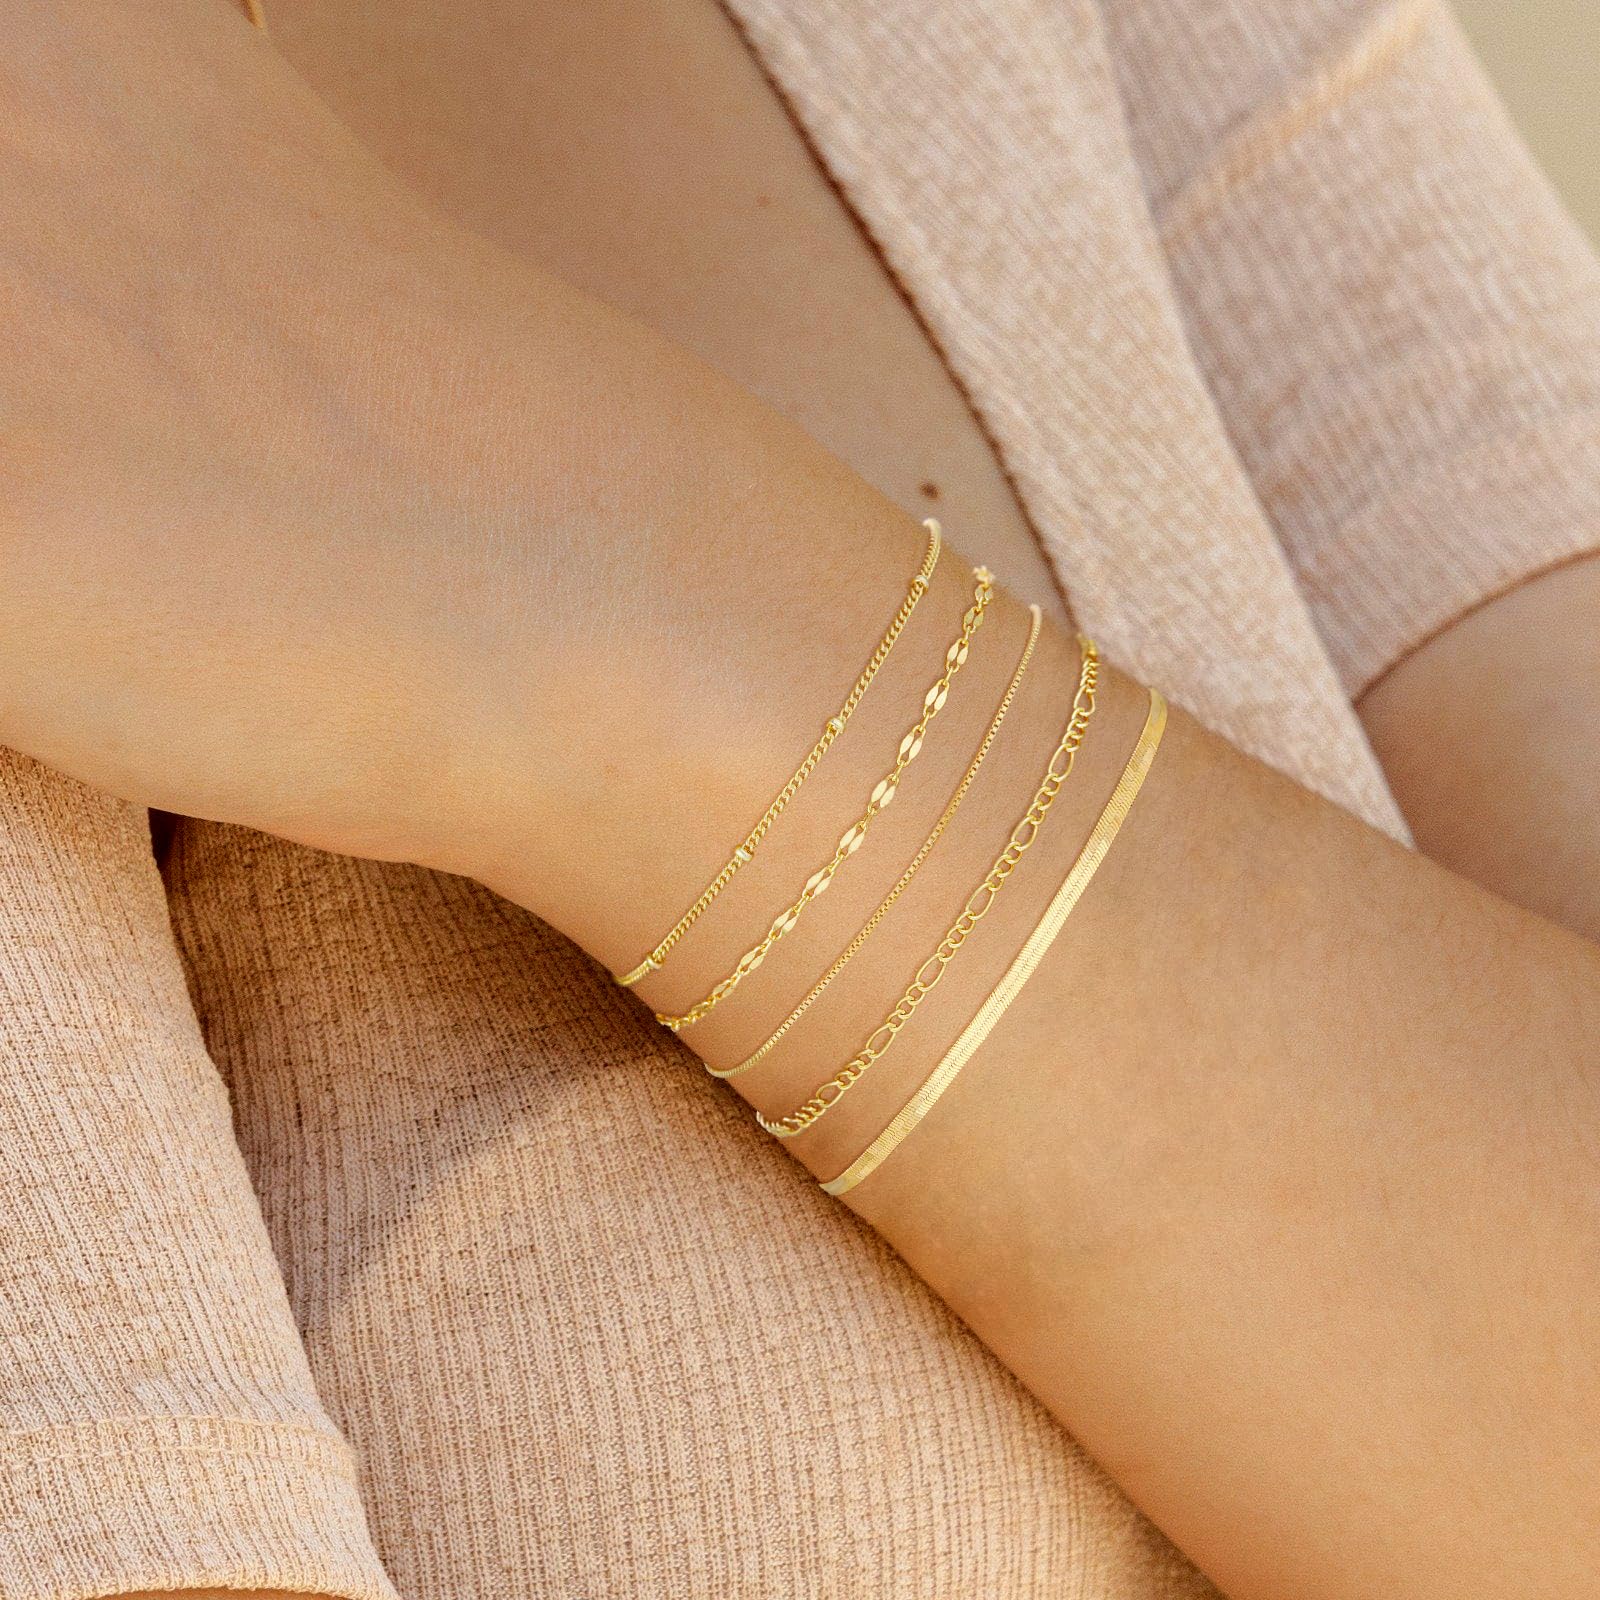 dainty gold bracelets